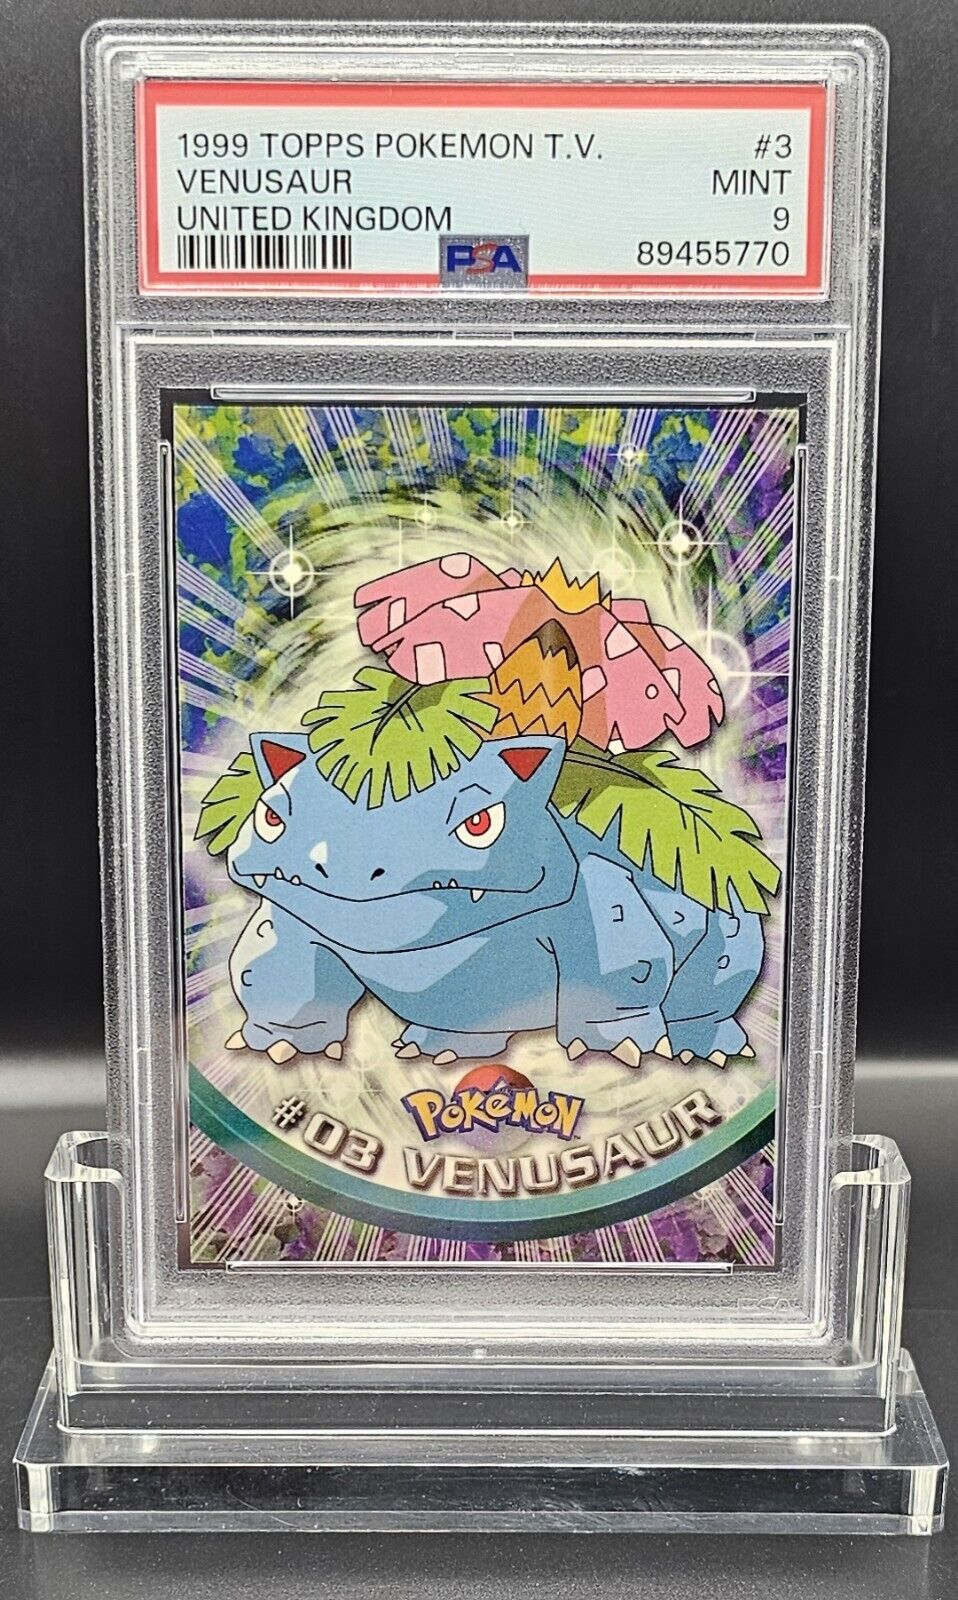 1999 Pokemon Topps TV Venusaur PSA 9